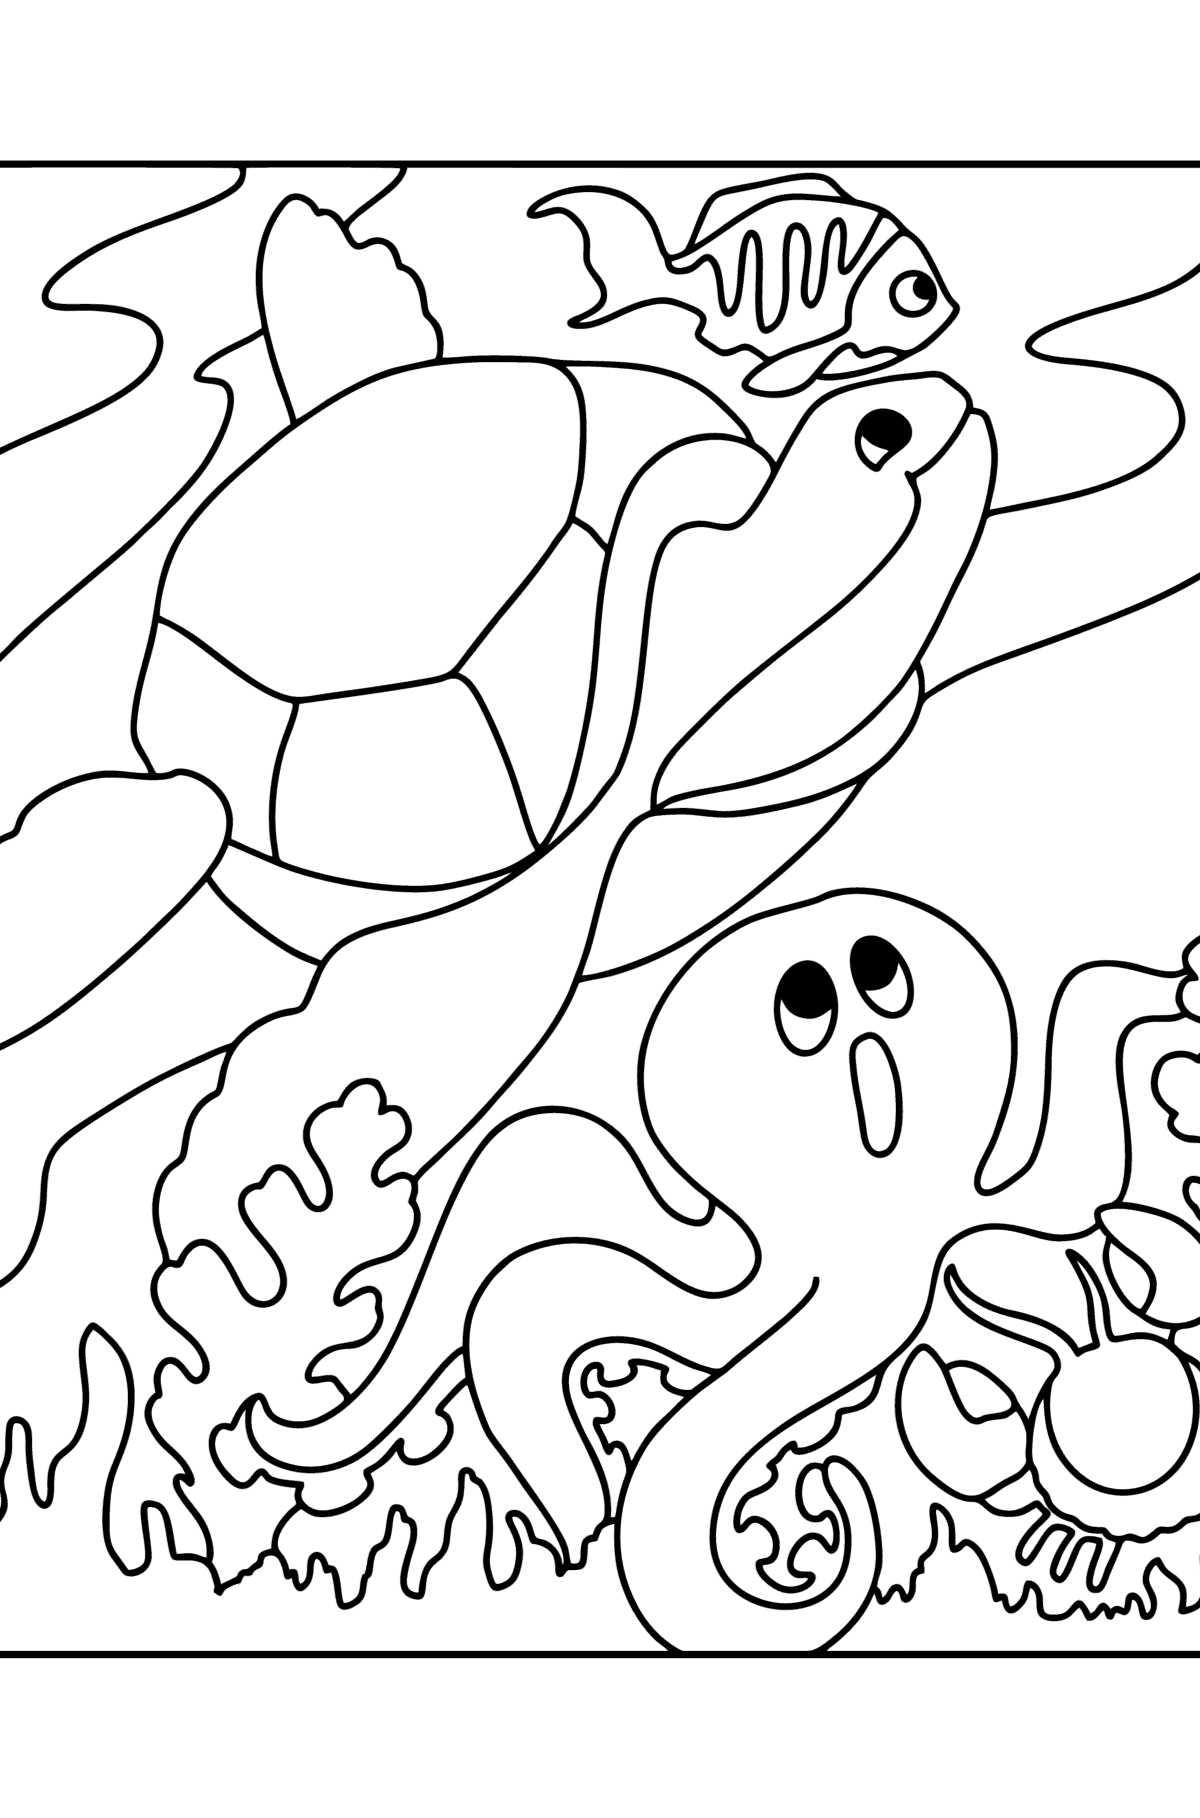 Desen de colorat pește, țestoasă, crab și caracatiță - Desene de colorat pentru copii